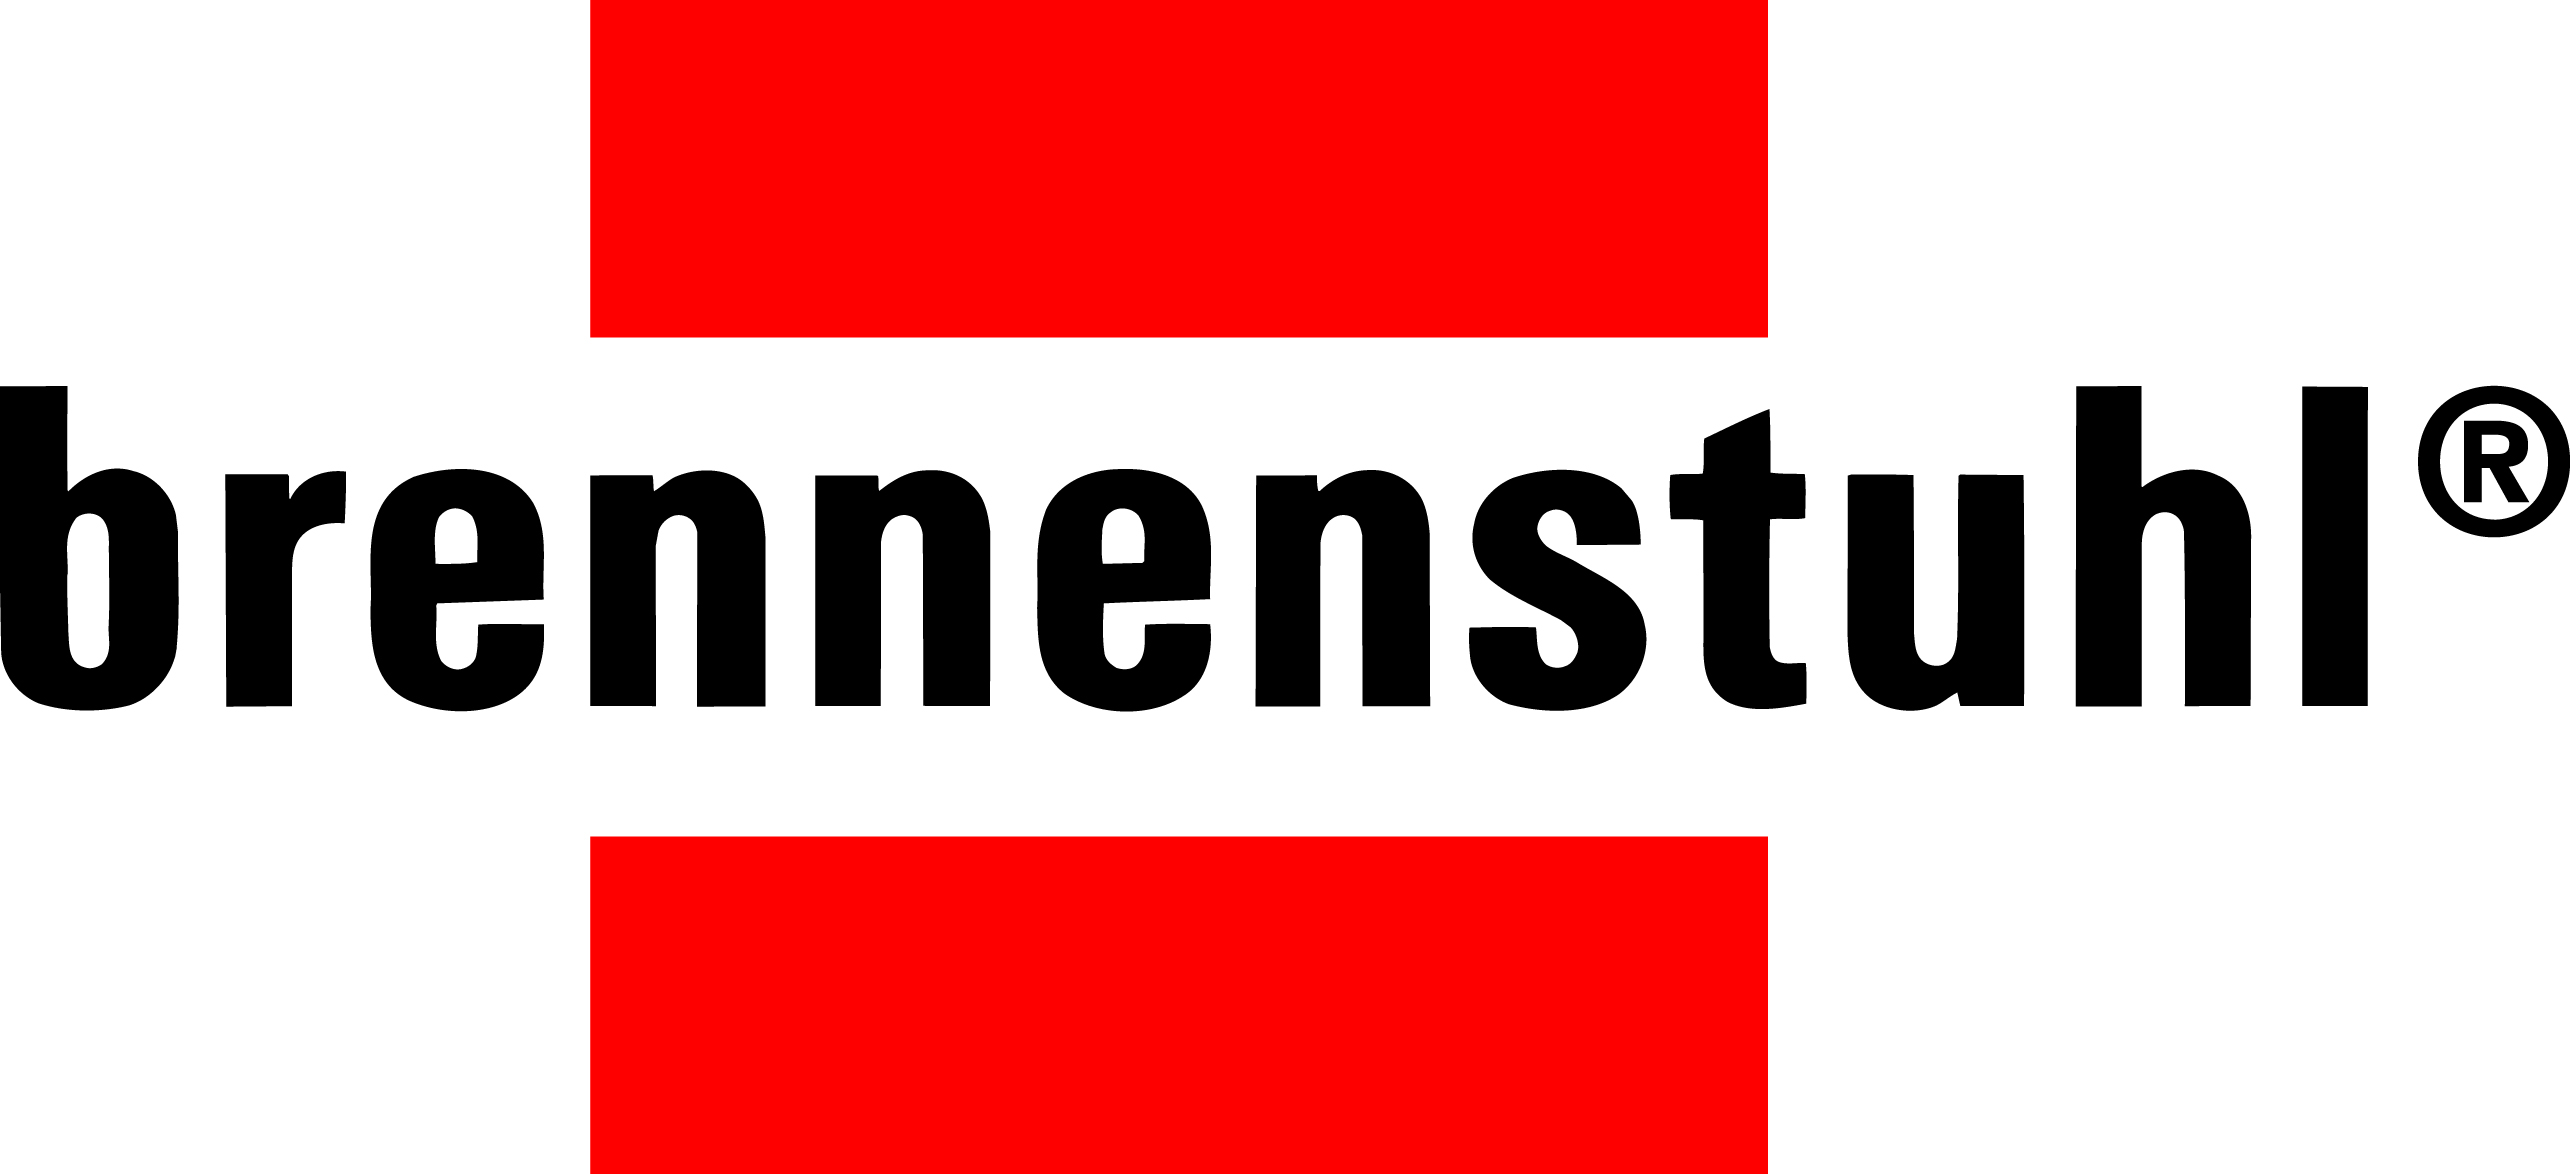 Brennenstuhl_logo